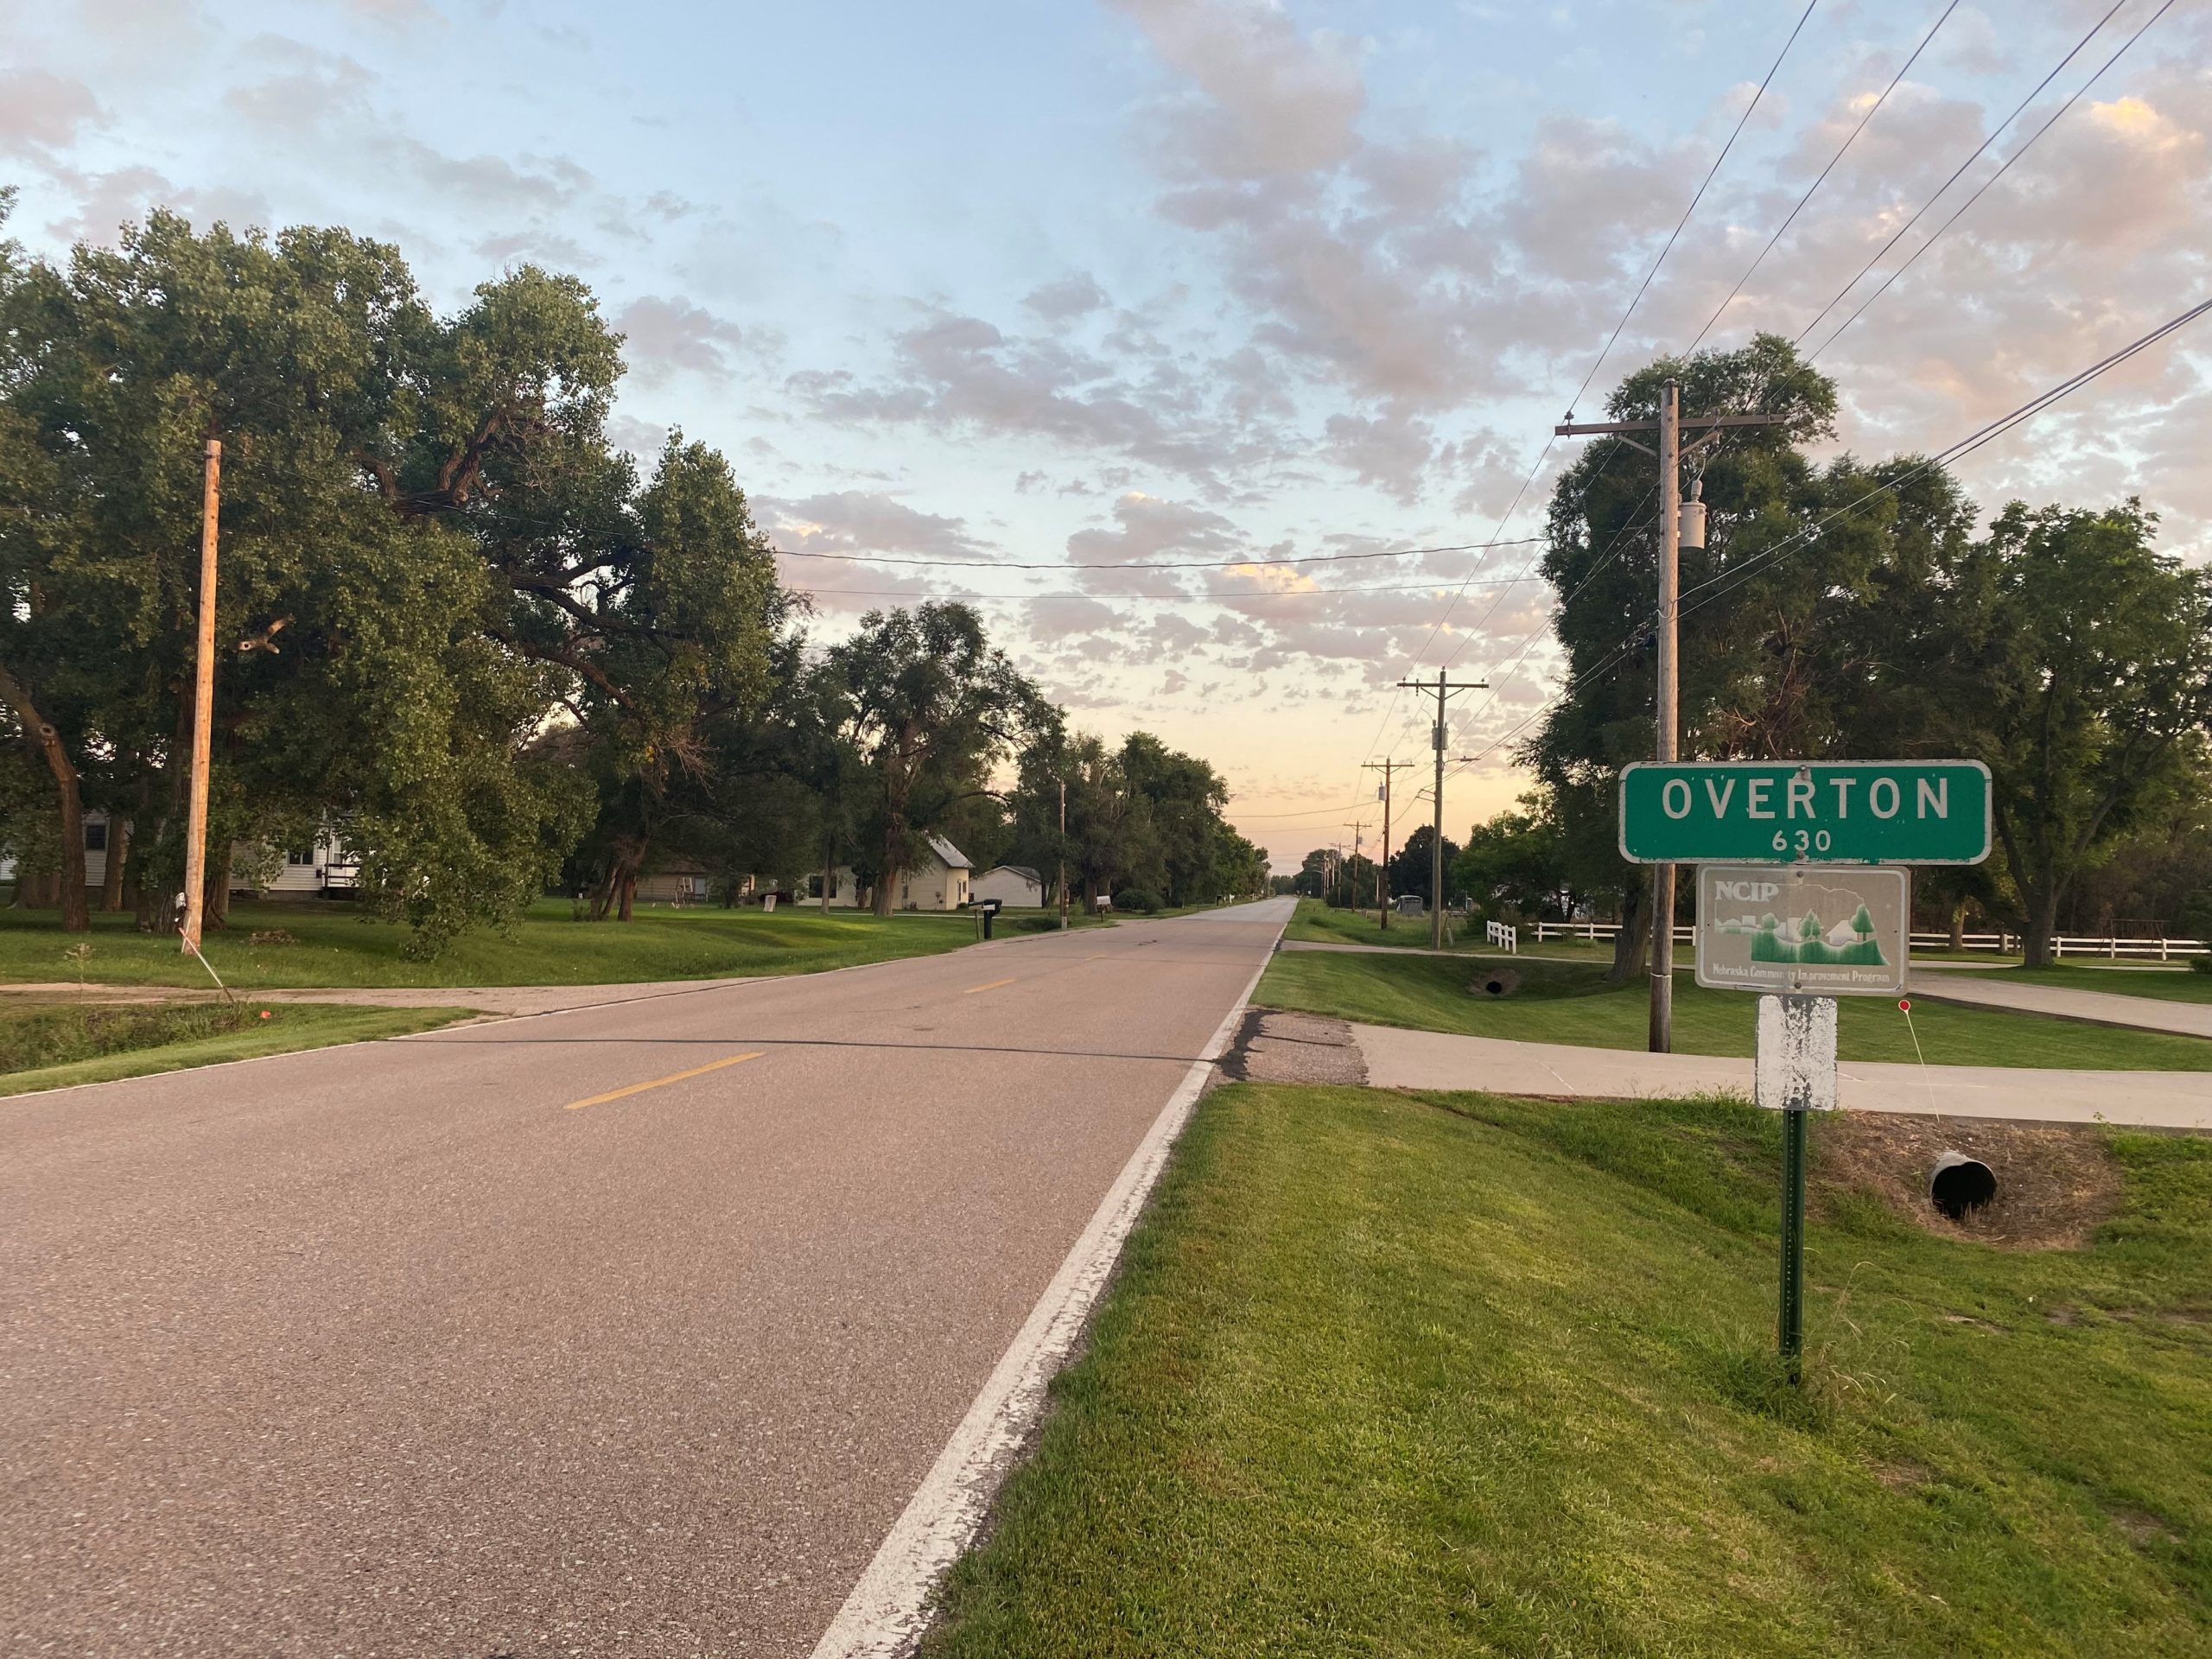 Overton Nebraska sign